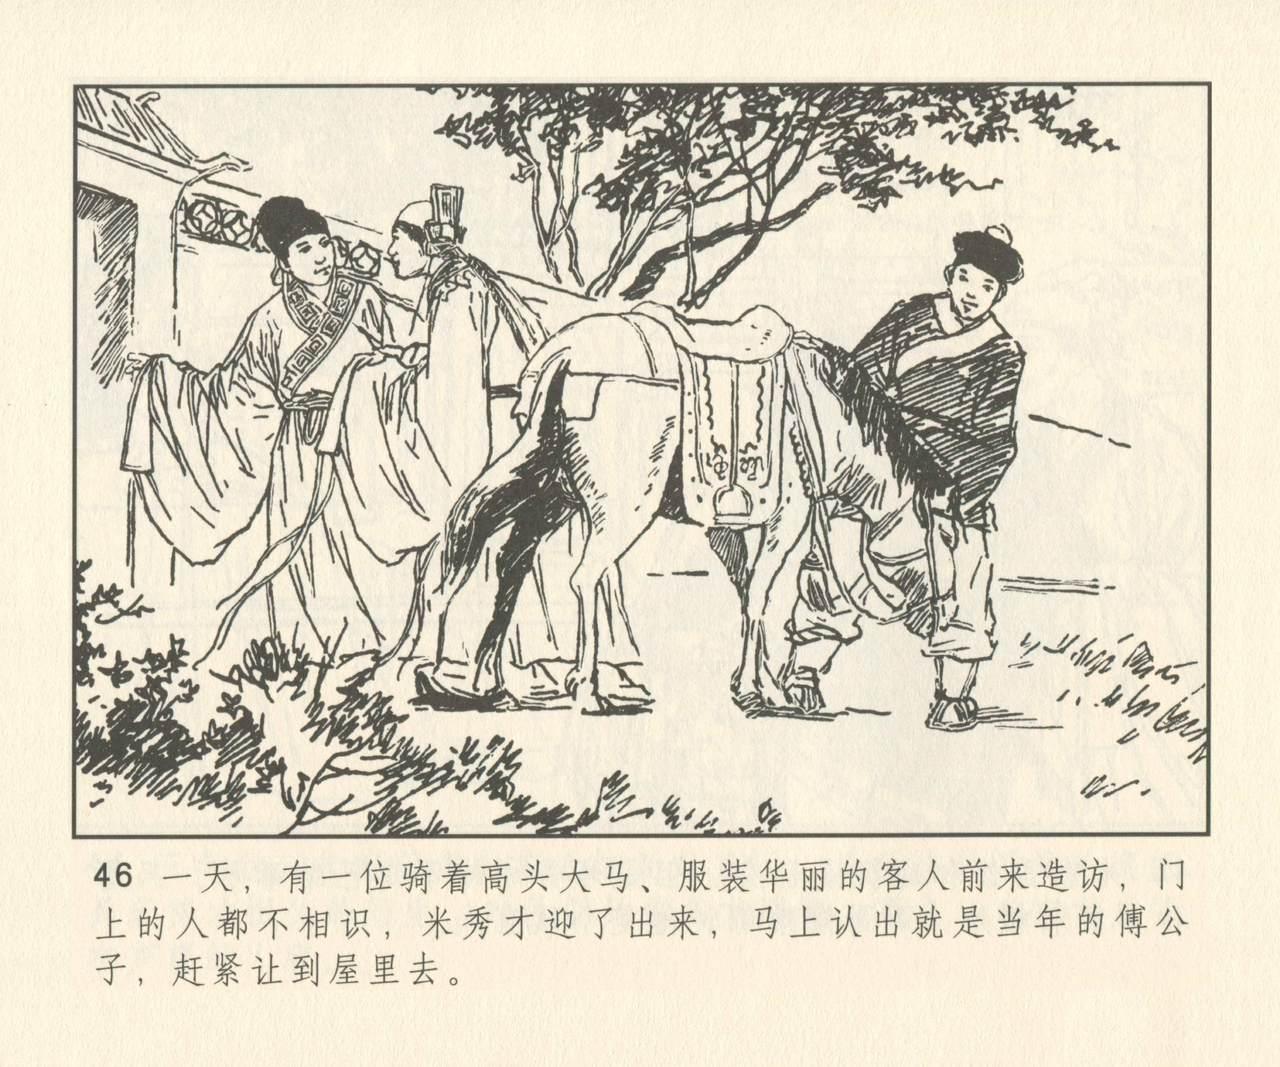 聊斋志异 张玮等绘 天津人民美术出版社 卷二十一 ~ 三十 174